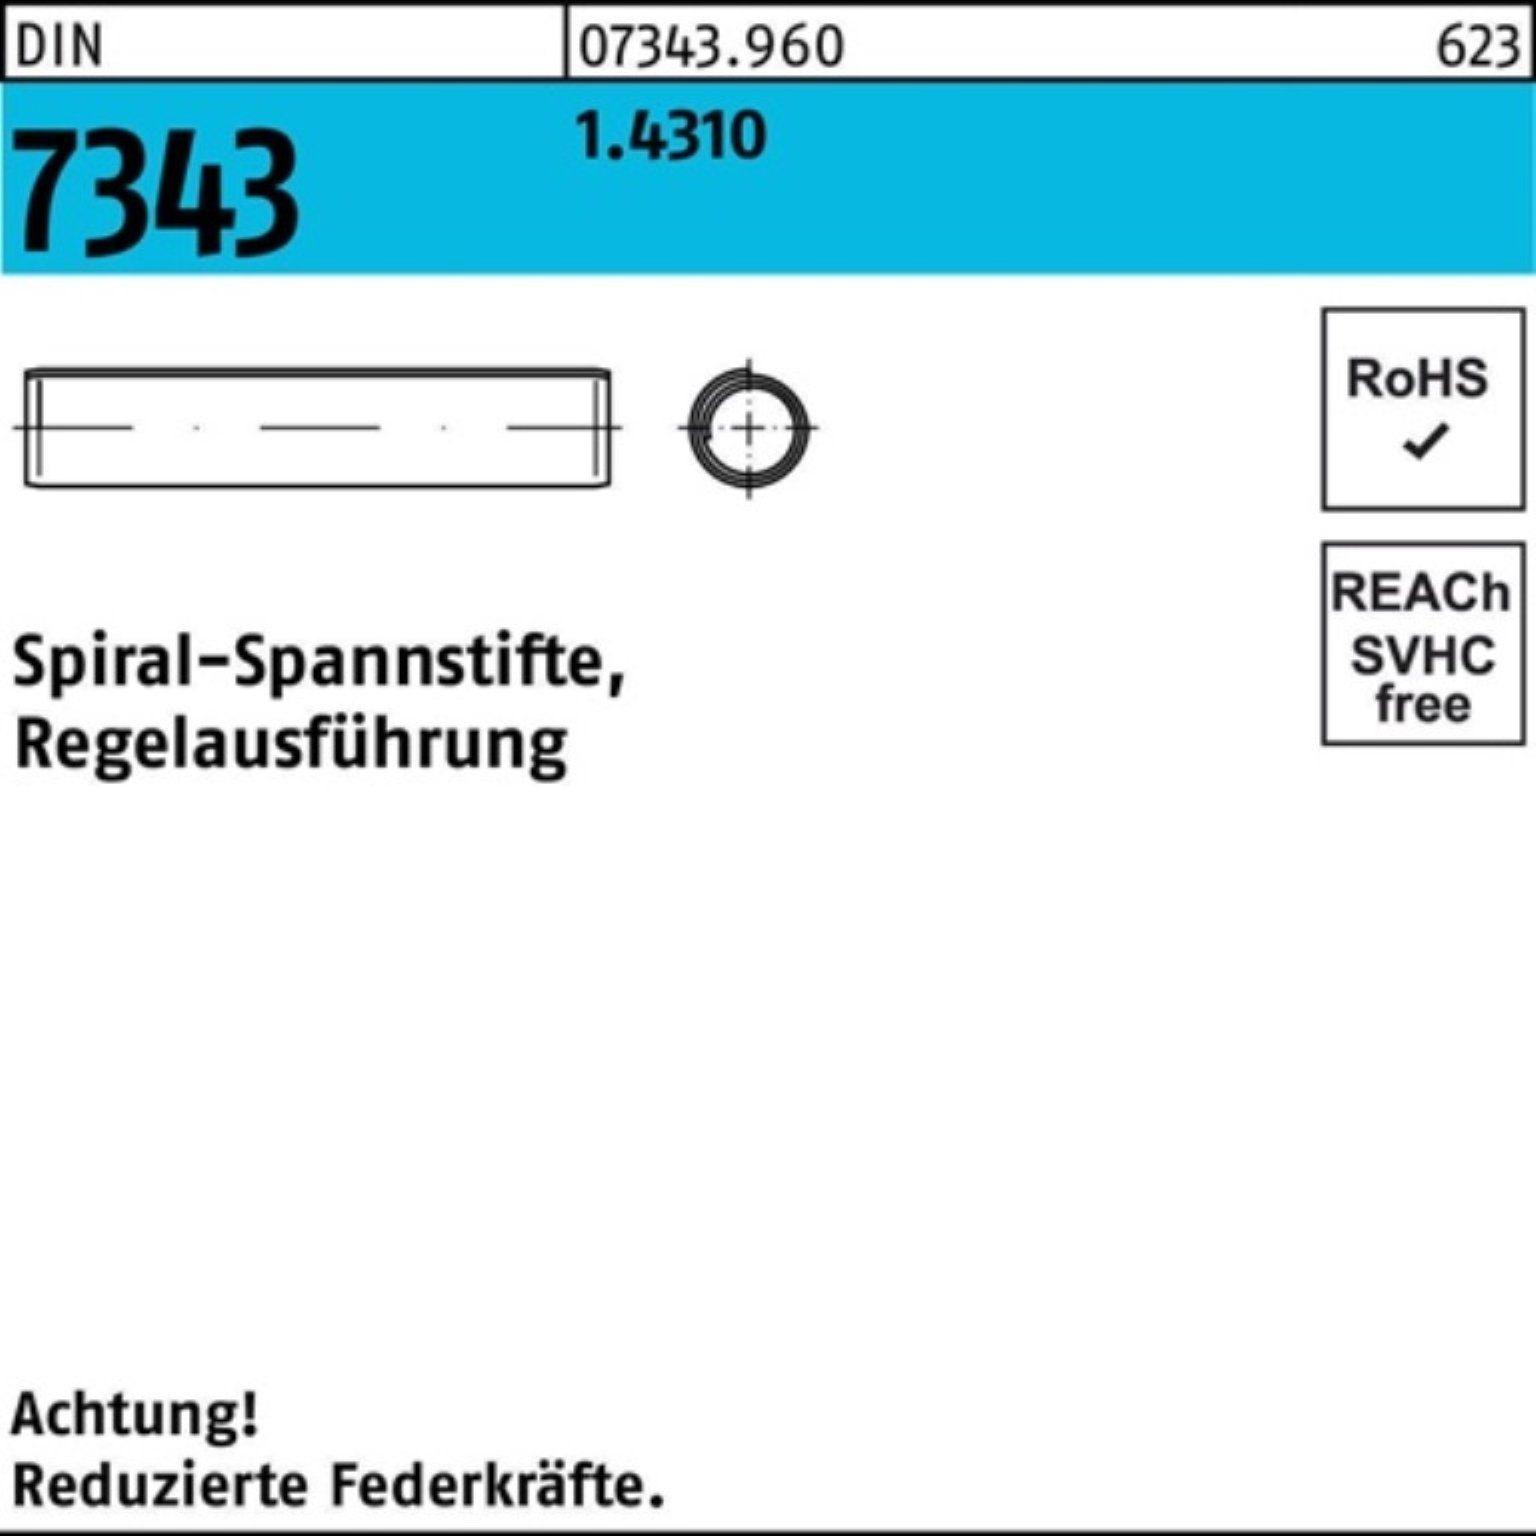 Reyher Spannstift 500er Pack 7343/ISO 1.4310 DIN 22 Spiralspannstift 8750 4x Regelausf